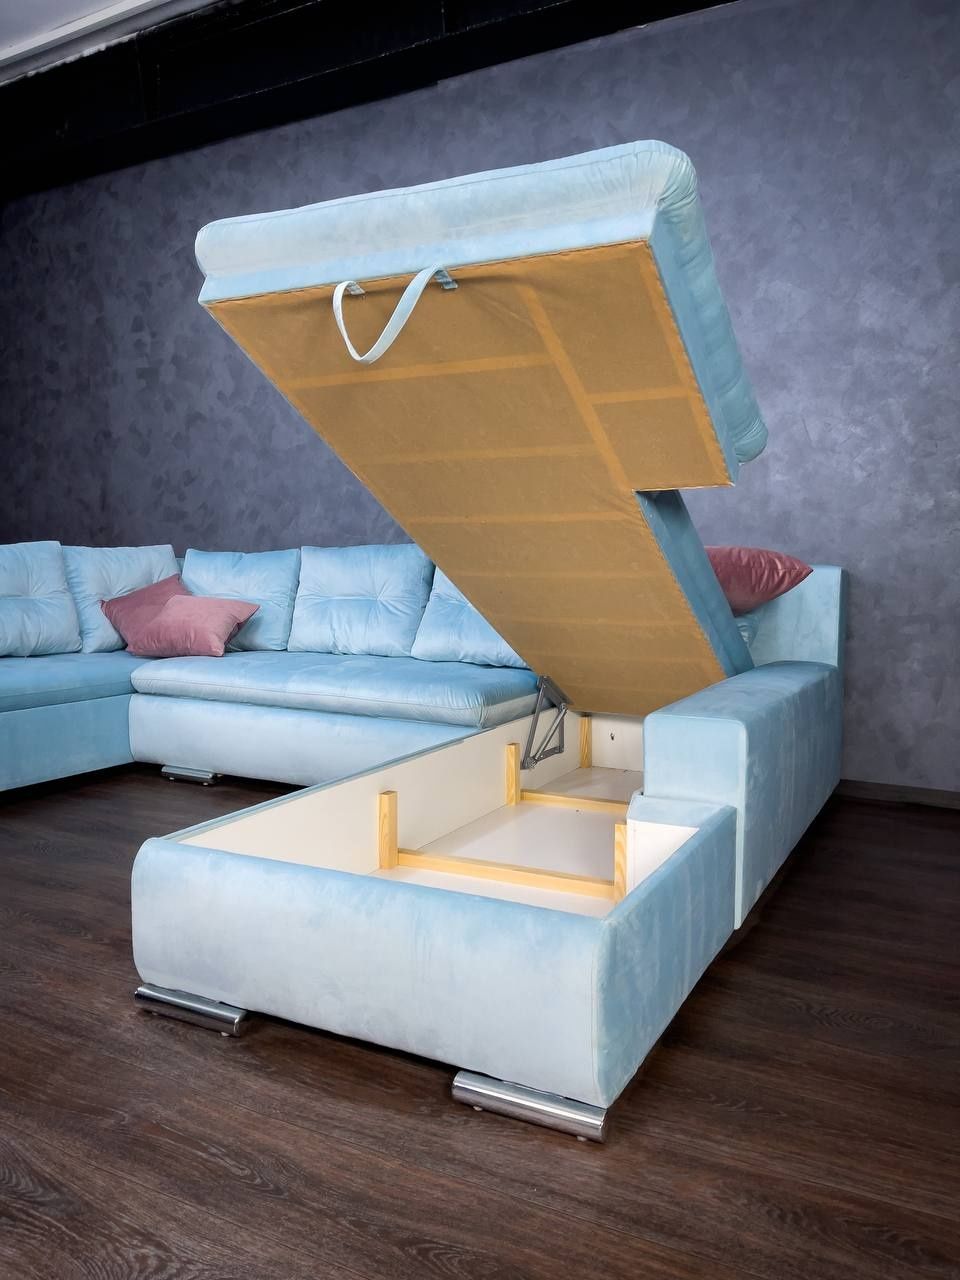 Производитель мягкой мебели предлагает угловой диван [GRANDE] .